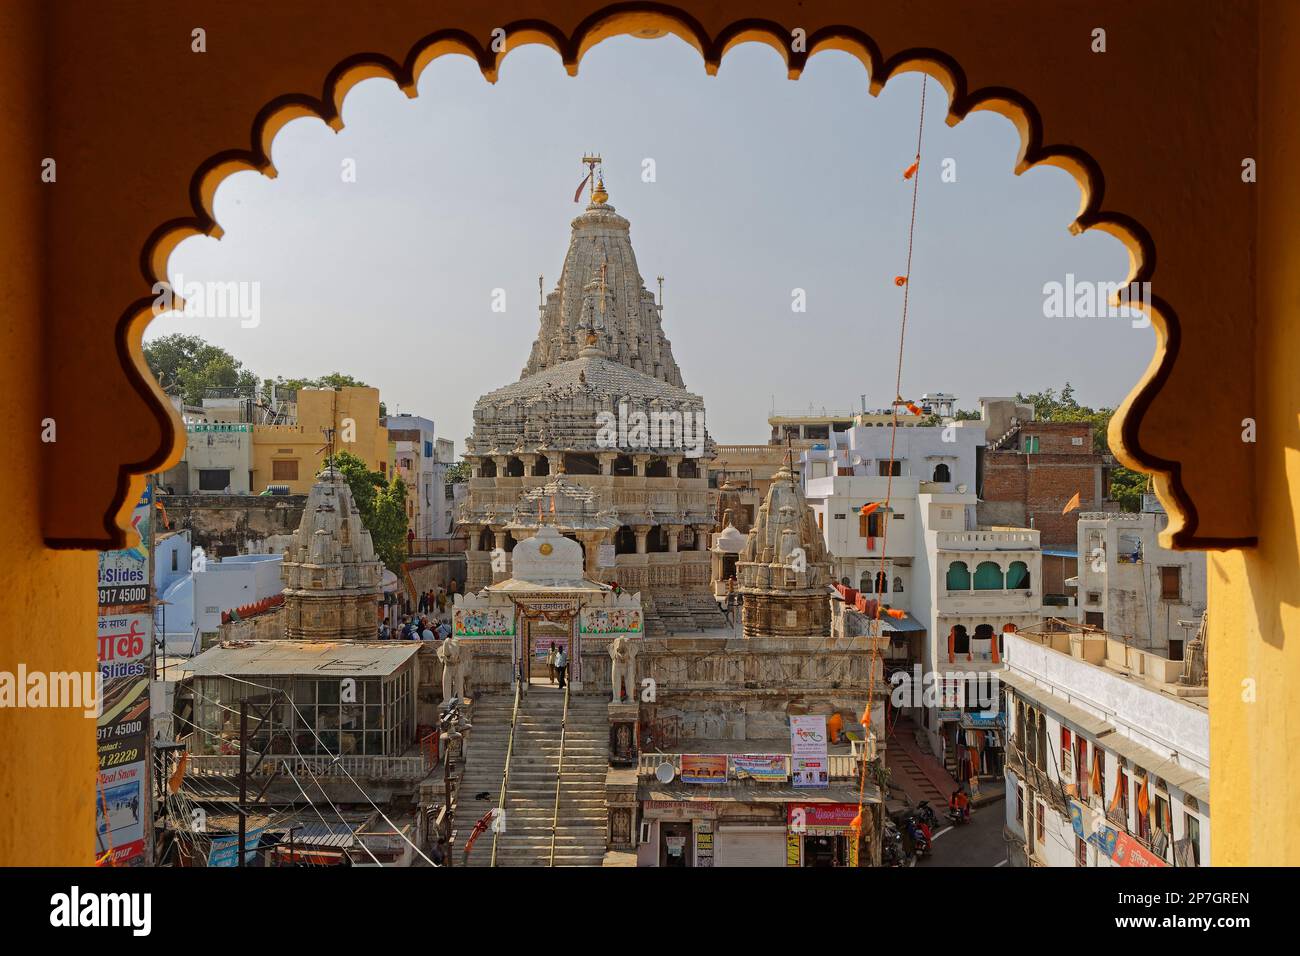 UDAIPUR, INDE, 4 novembre 2017 : Temple Jagdish, grand temple hindou au milieu d'Udaipur. Le temple est en culte continu depuis 1651. Banque D'Images